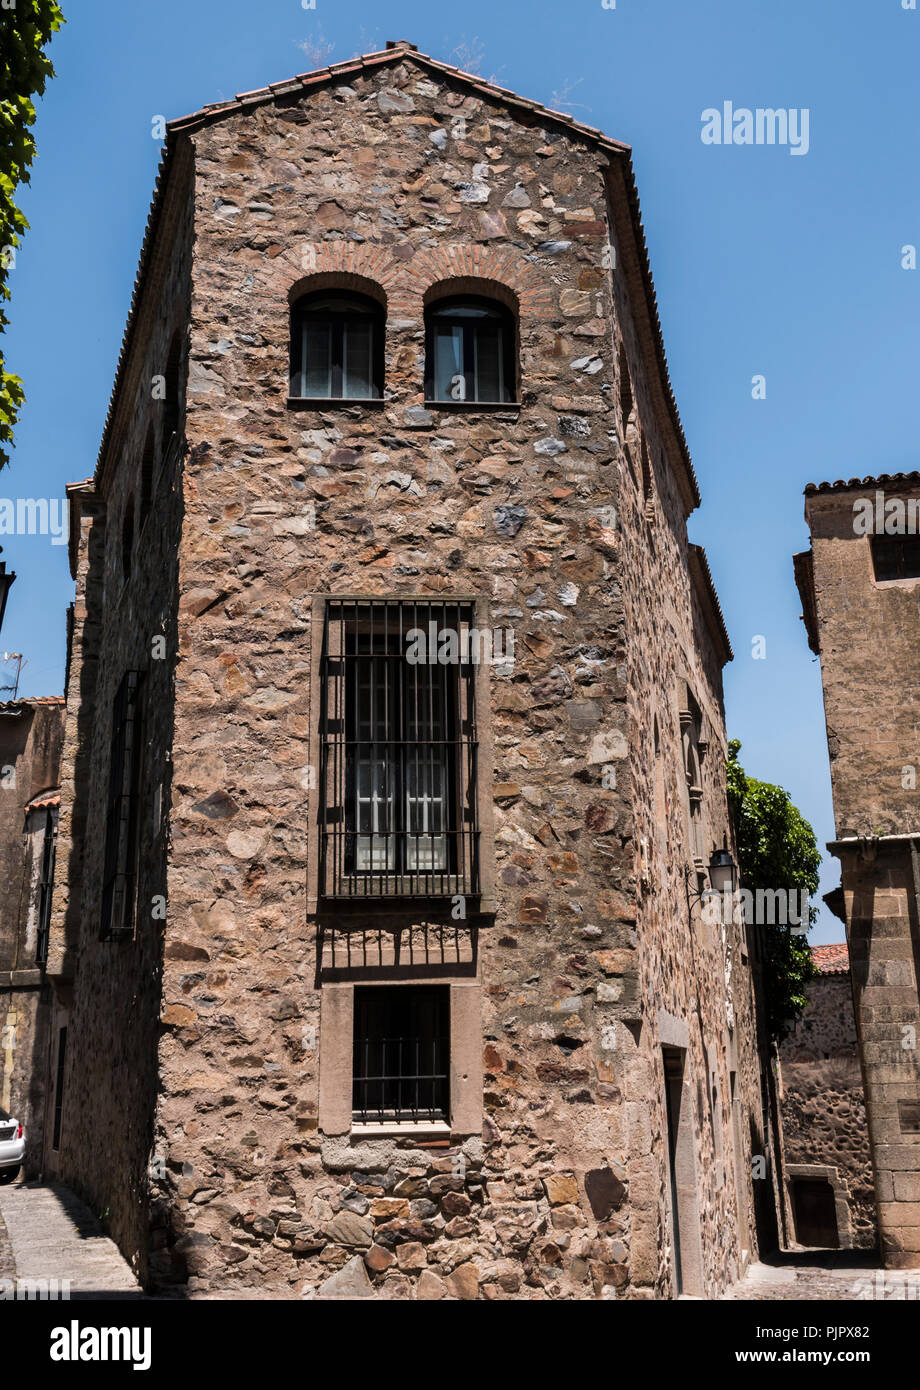 Casa típica de la ciudad vieja de Cáceres, España Foto de stock